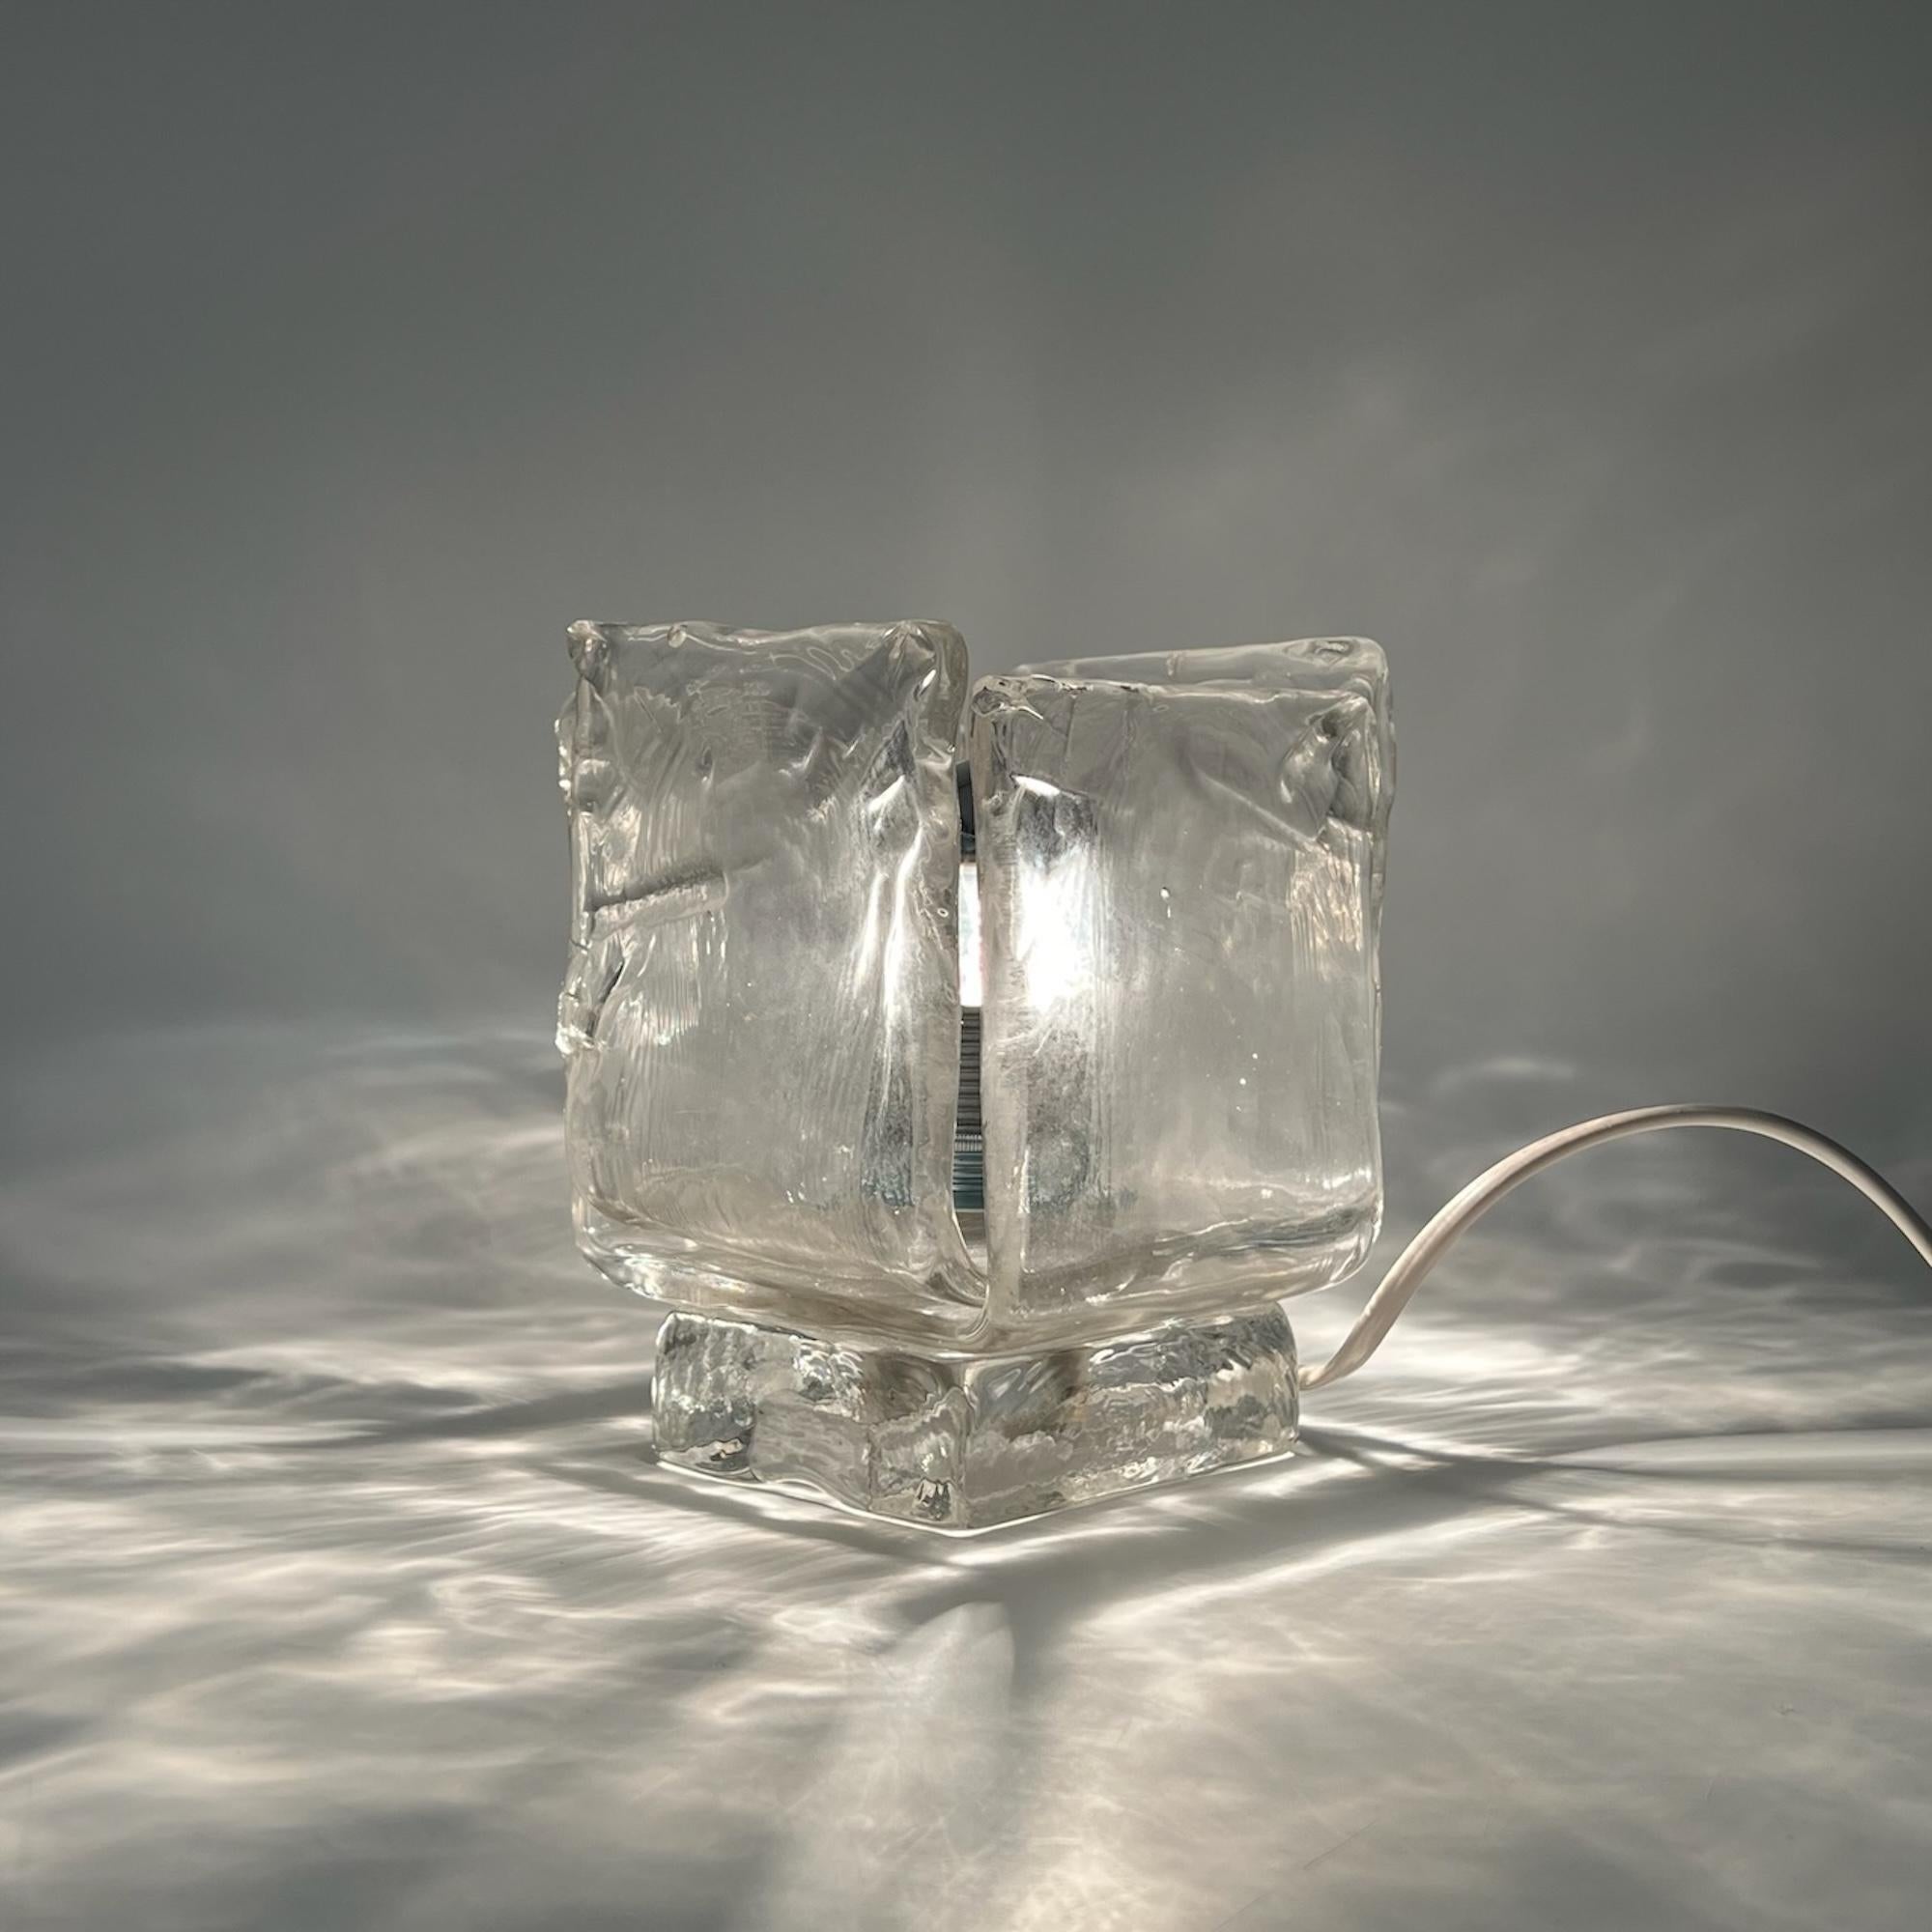 Transformez votre espace avec une touche de luxe rétro - en présentant cette lampe exclusive en verre de Murano des années 1970, fabriquée de manière experte par l'estimée Vetrerie Toso en Italie.

Fabriquée par deux pièces imbriquées de verre de